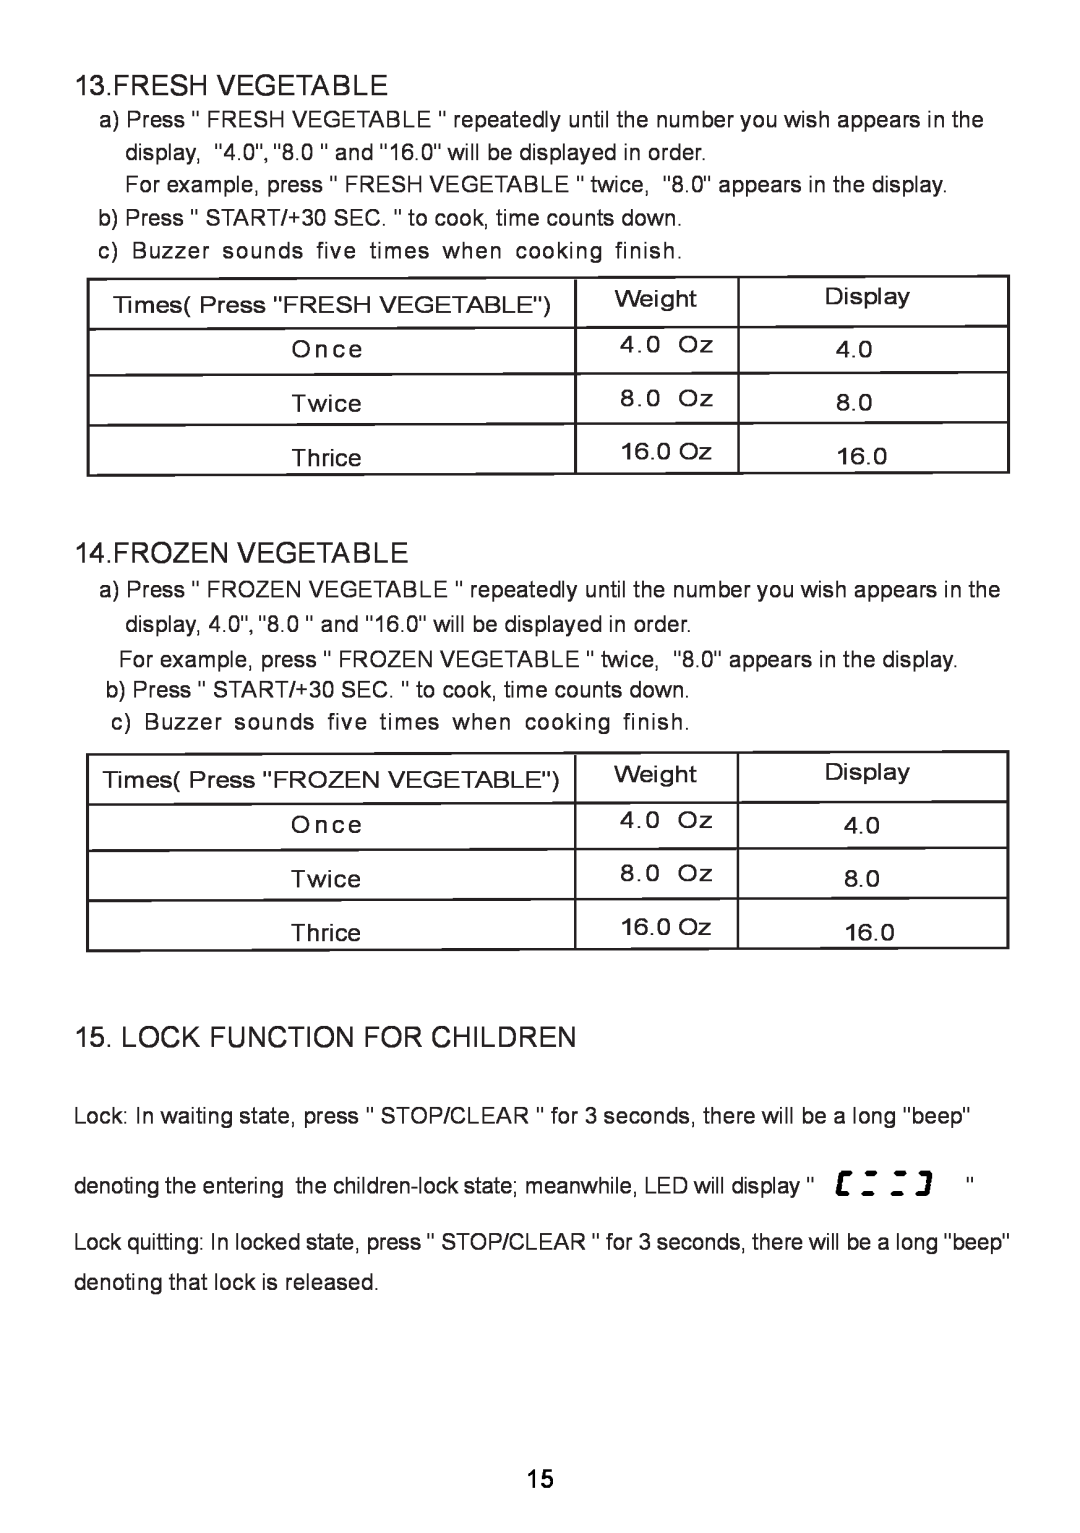 RCA RMW713-WHITE instruction manual Fresh Vegetable, Frozen Vegetable, Lock Function For Children 